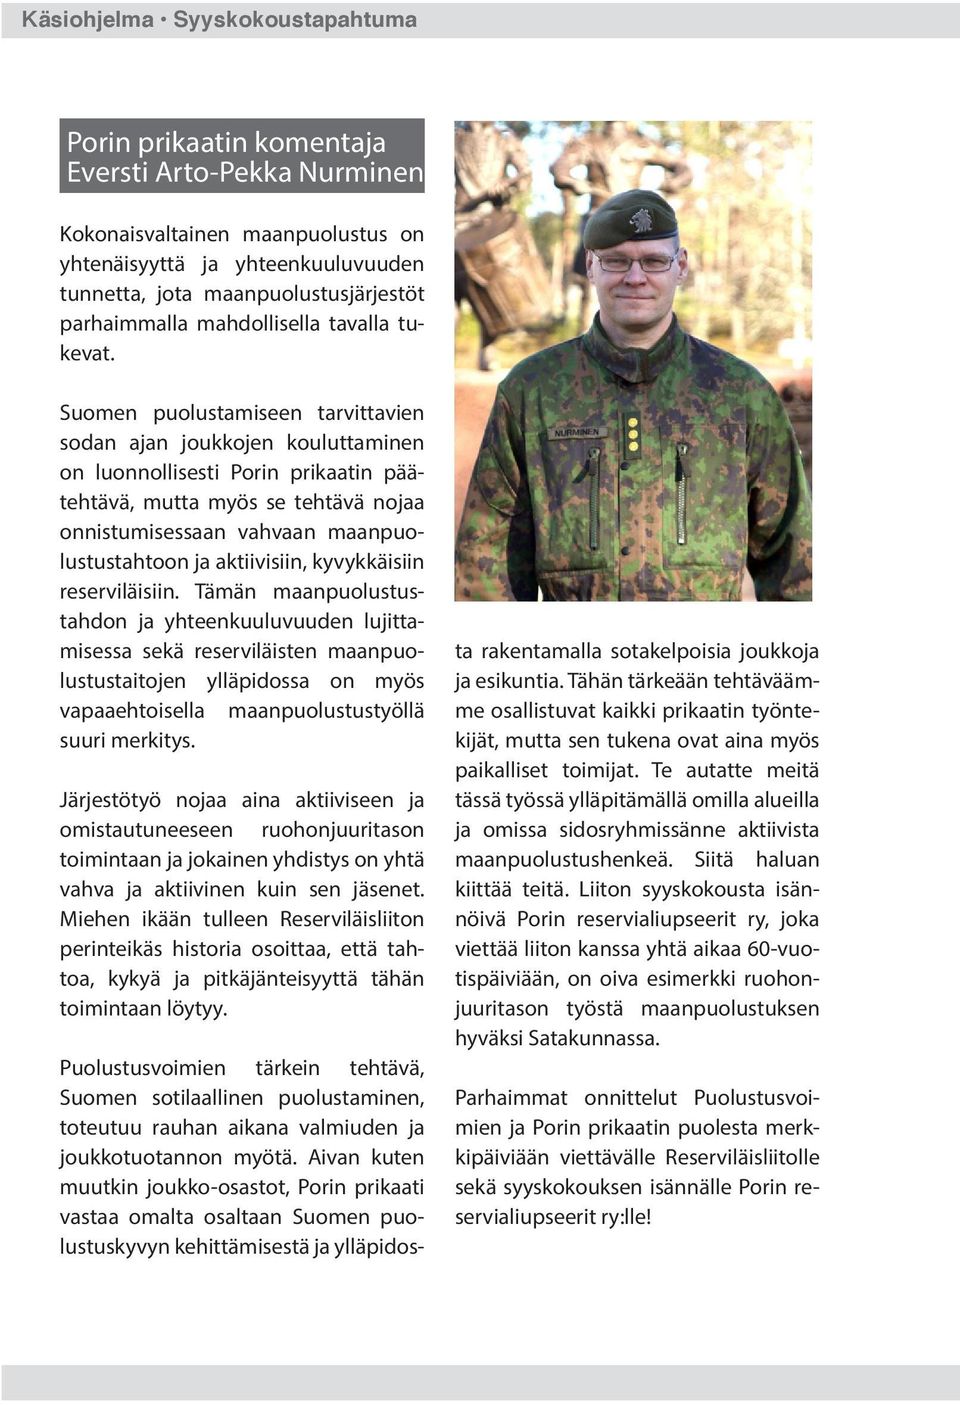 Suomen puolustamiseen tarvittavien sodan ajan joukkojen kouluttaminen on luonnollisesti Porin prikaatin päätehtävä, mutta myös se tehtävä nojaa onnistumisessaan vahvaan maanpuolustustahtoon ja